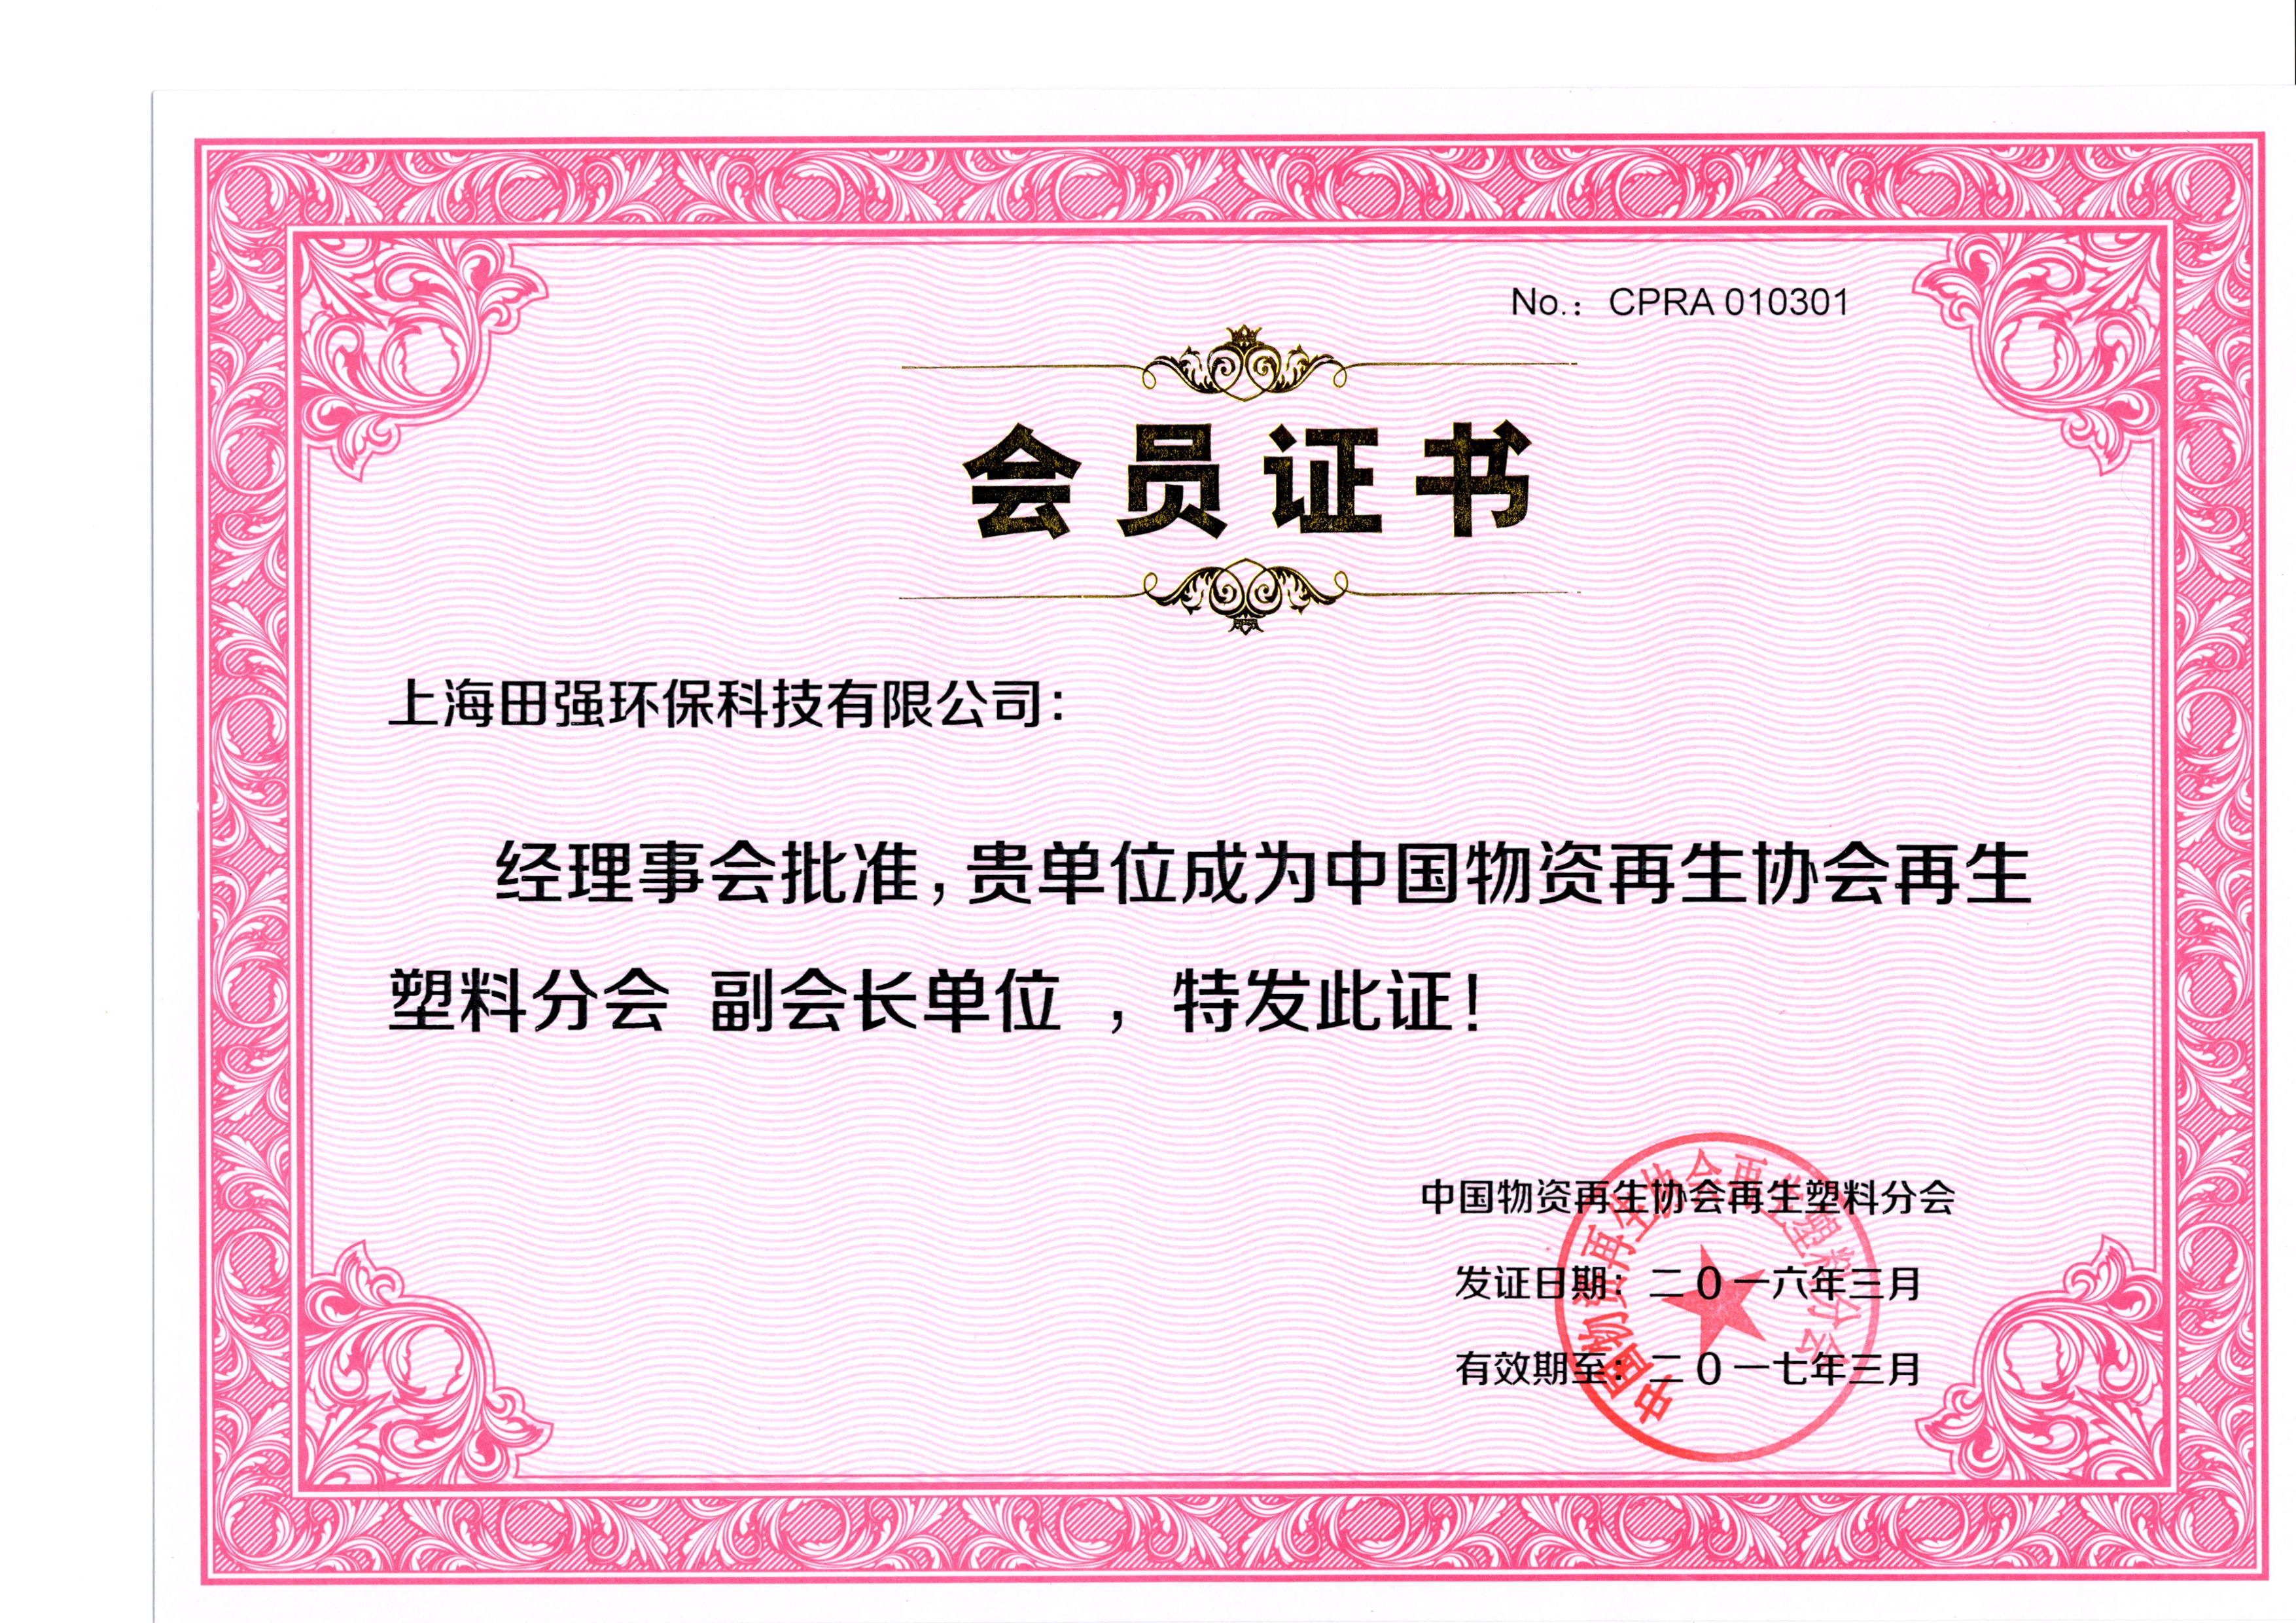 中國物資再生協會會員證